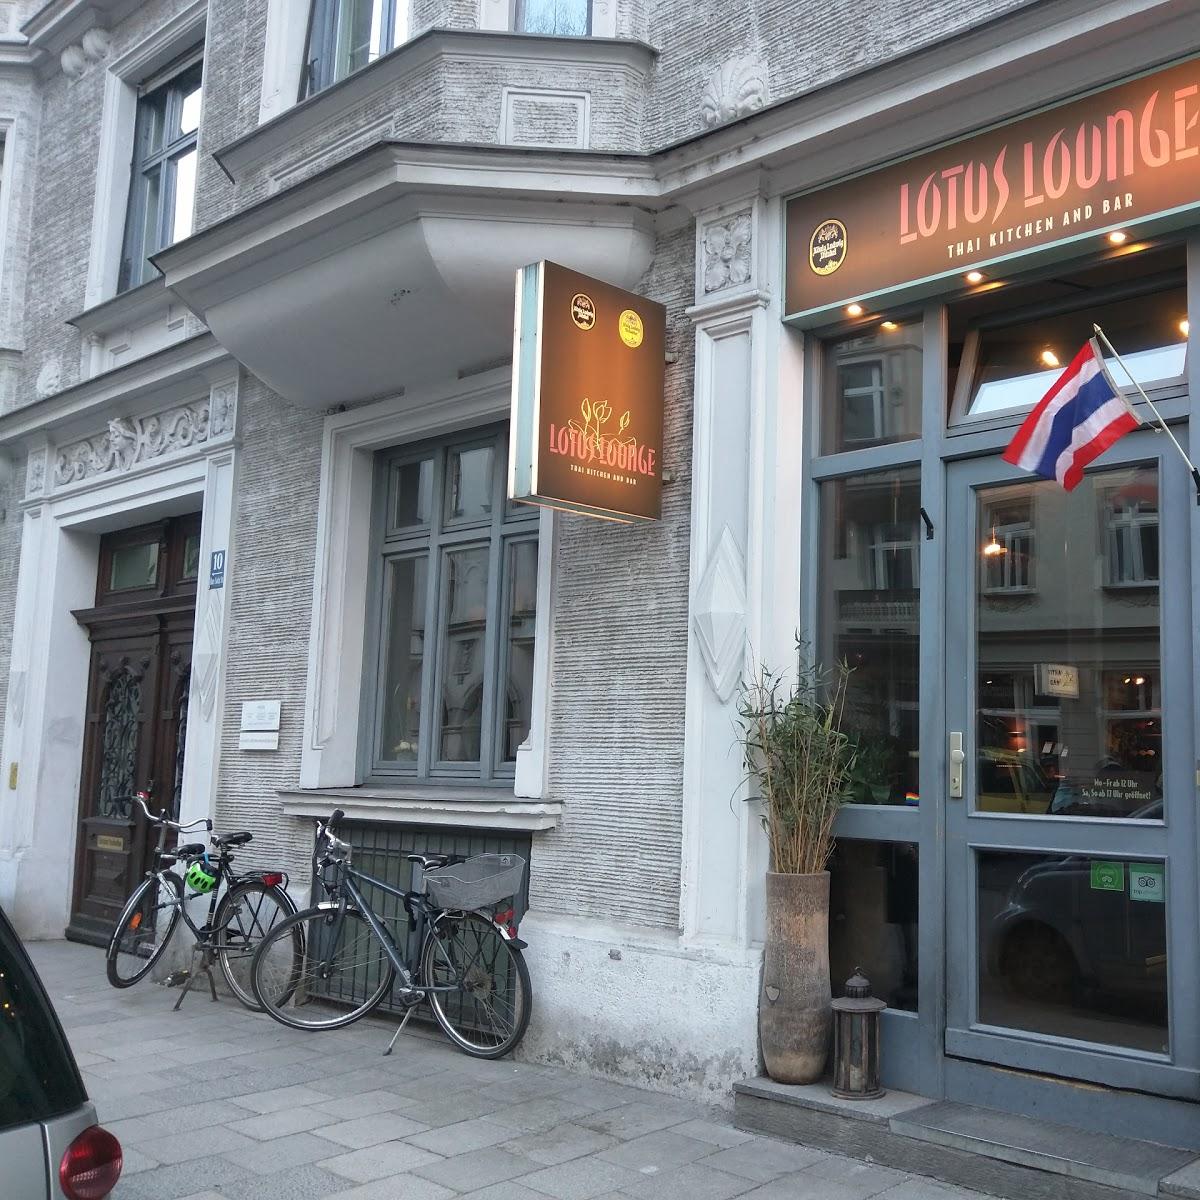 Restaurant "Lotus Lounge – Thai Kitchen and Bar" in München